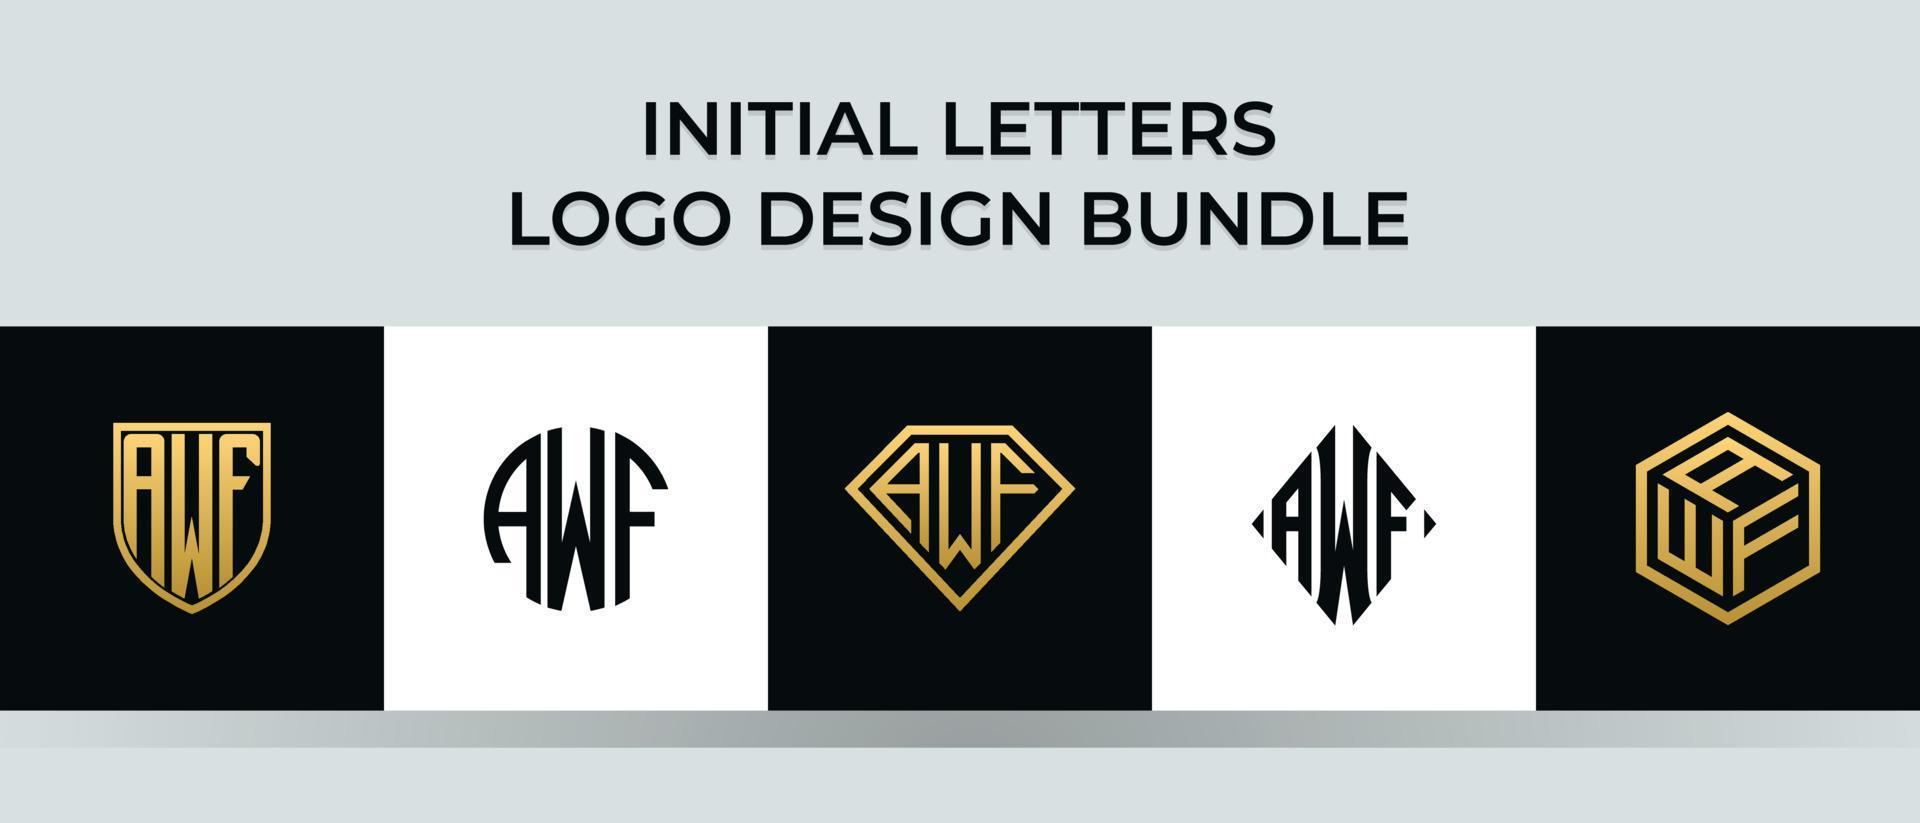 lettere iniziali awf logo design bundle vettore